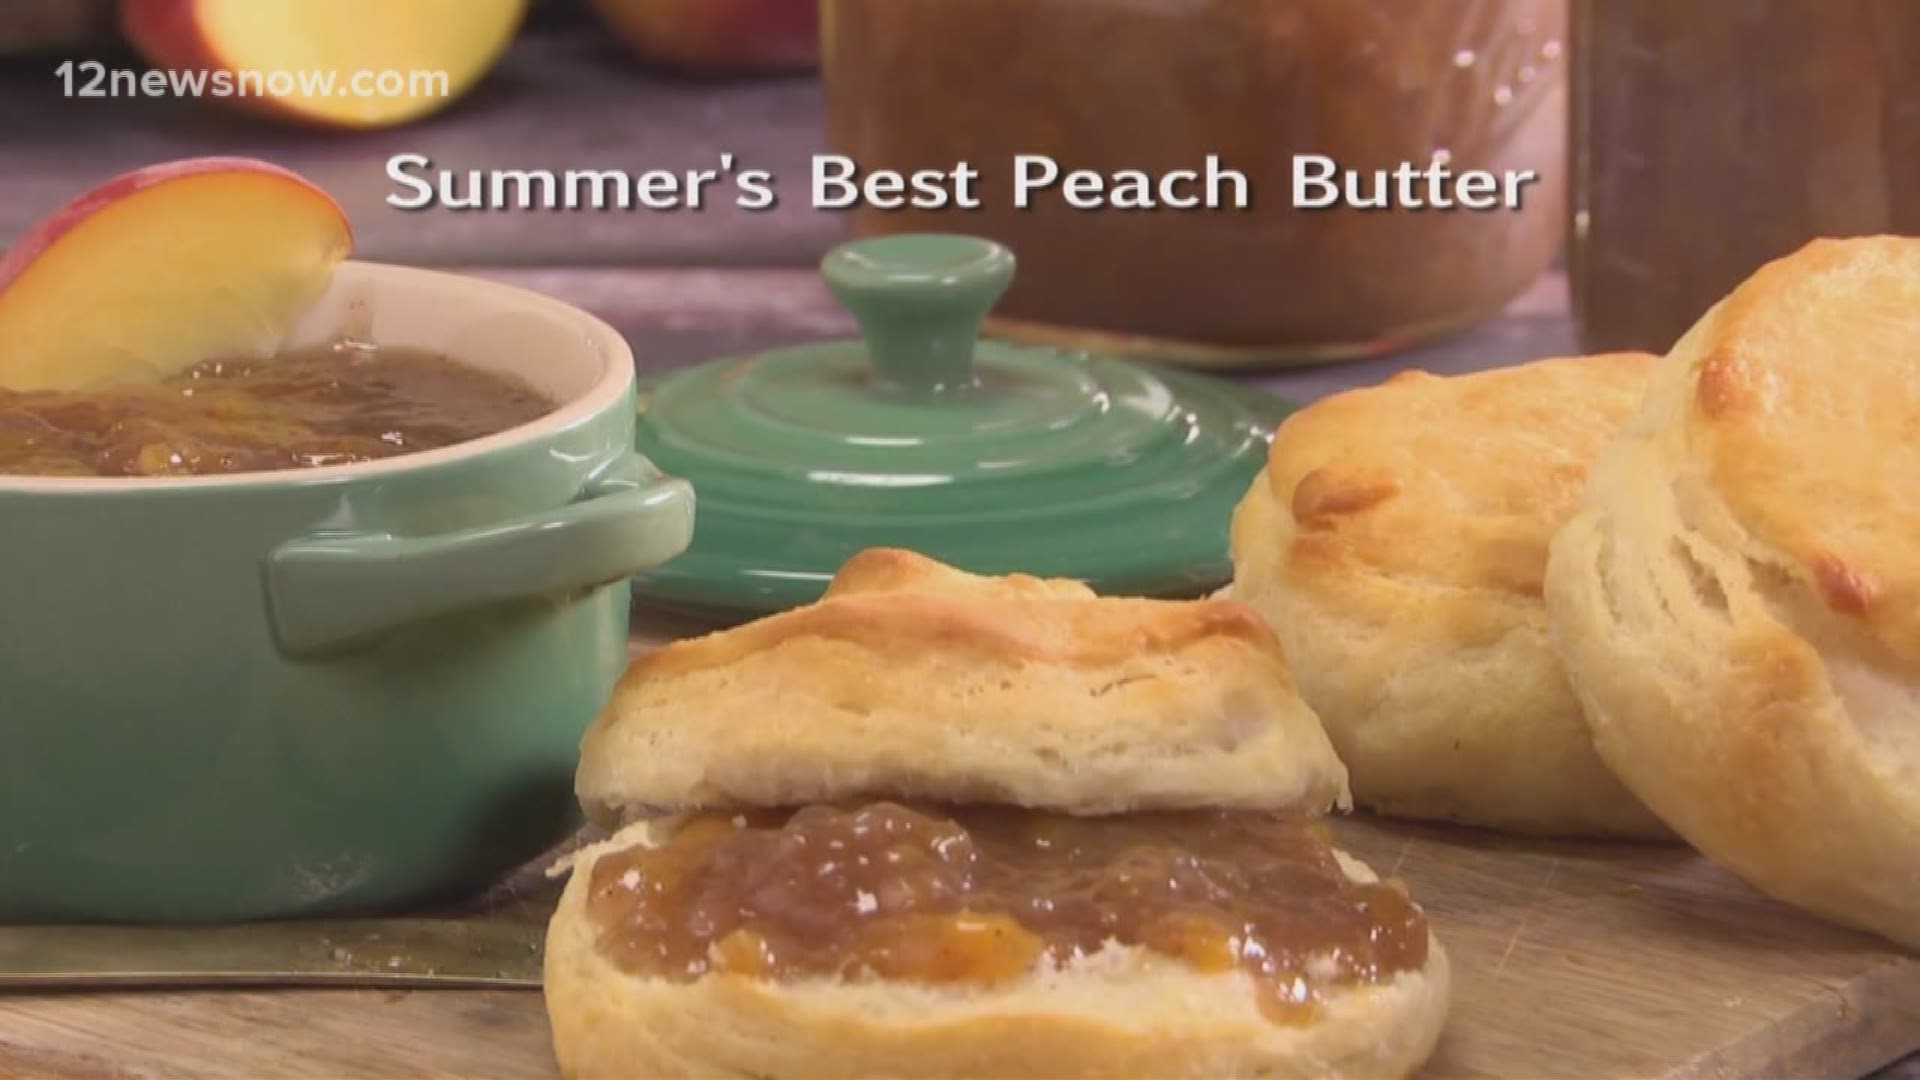 Mr. Food makes Summer's Best Peach Butter